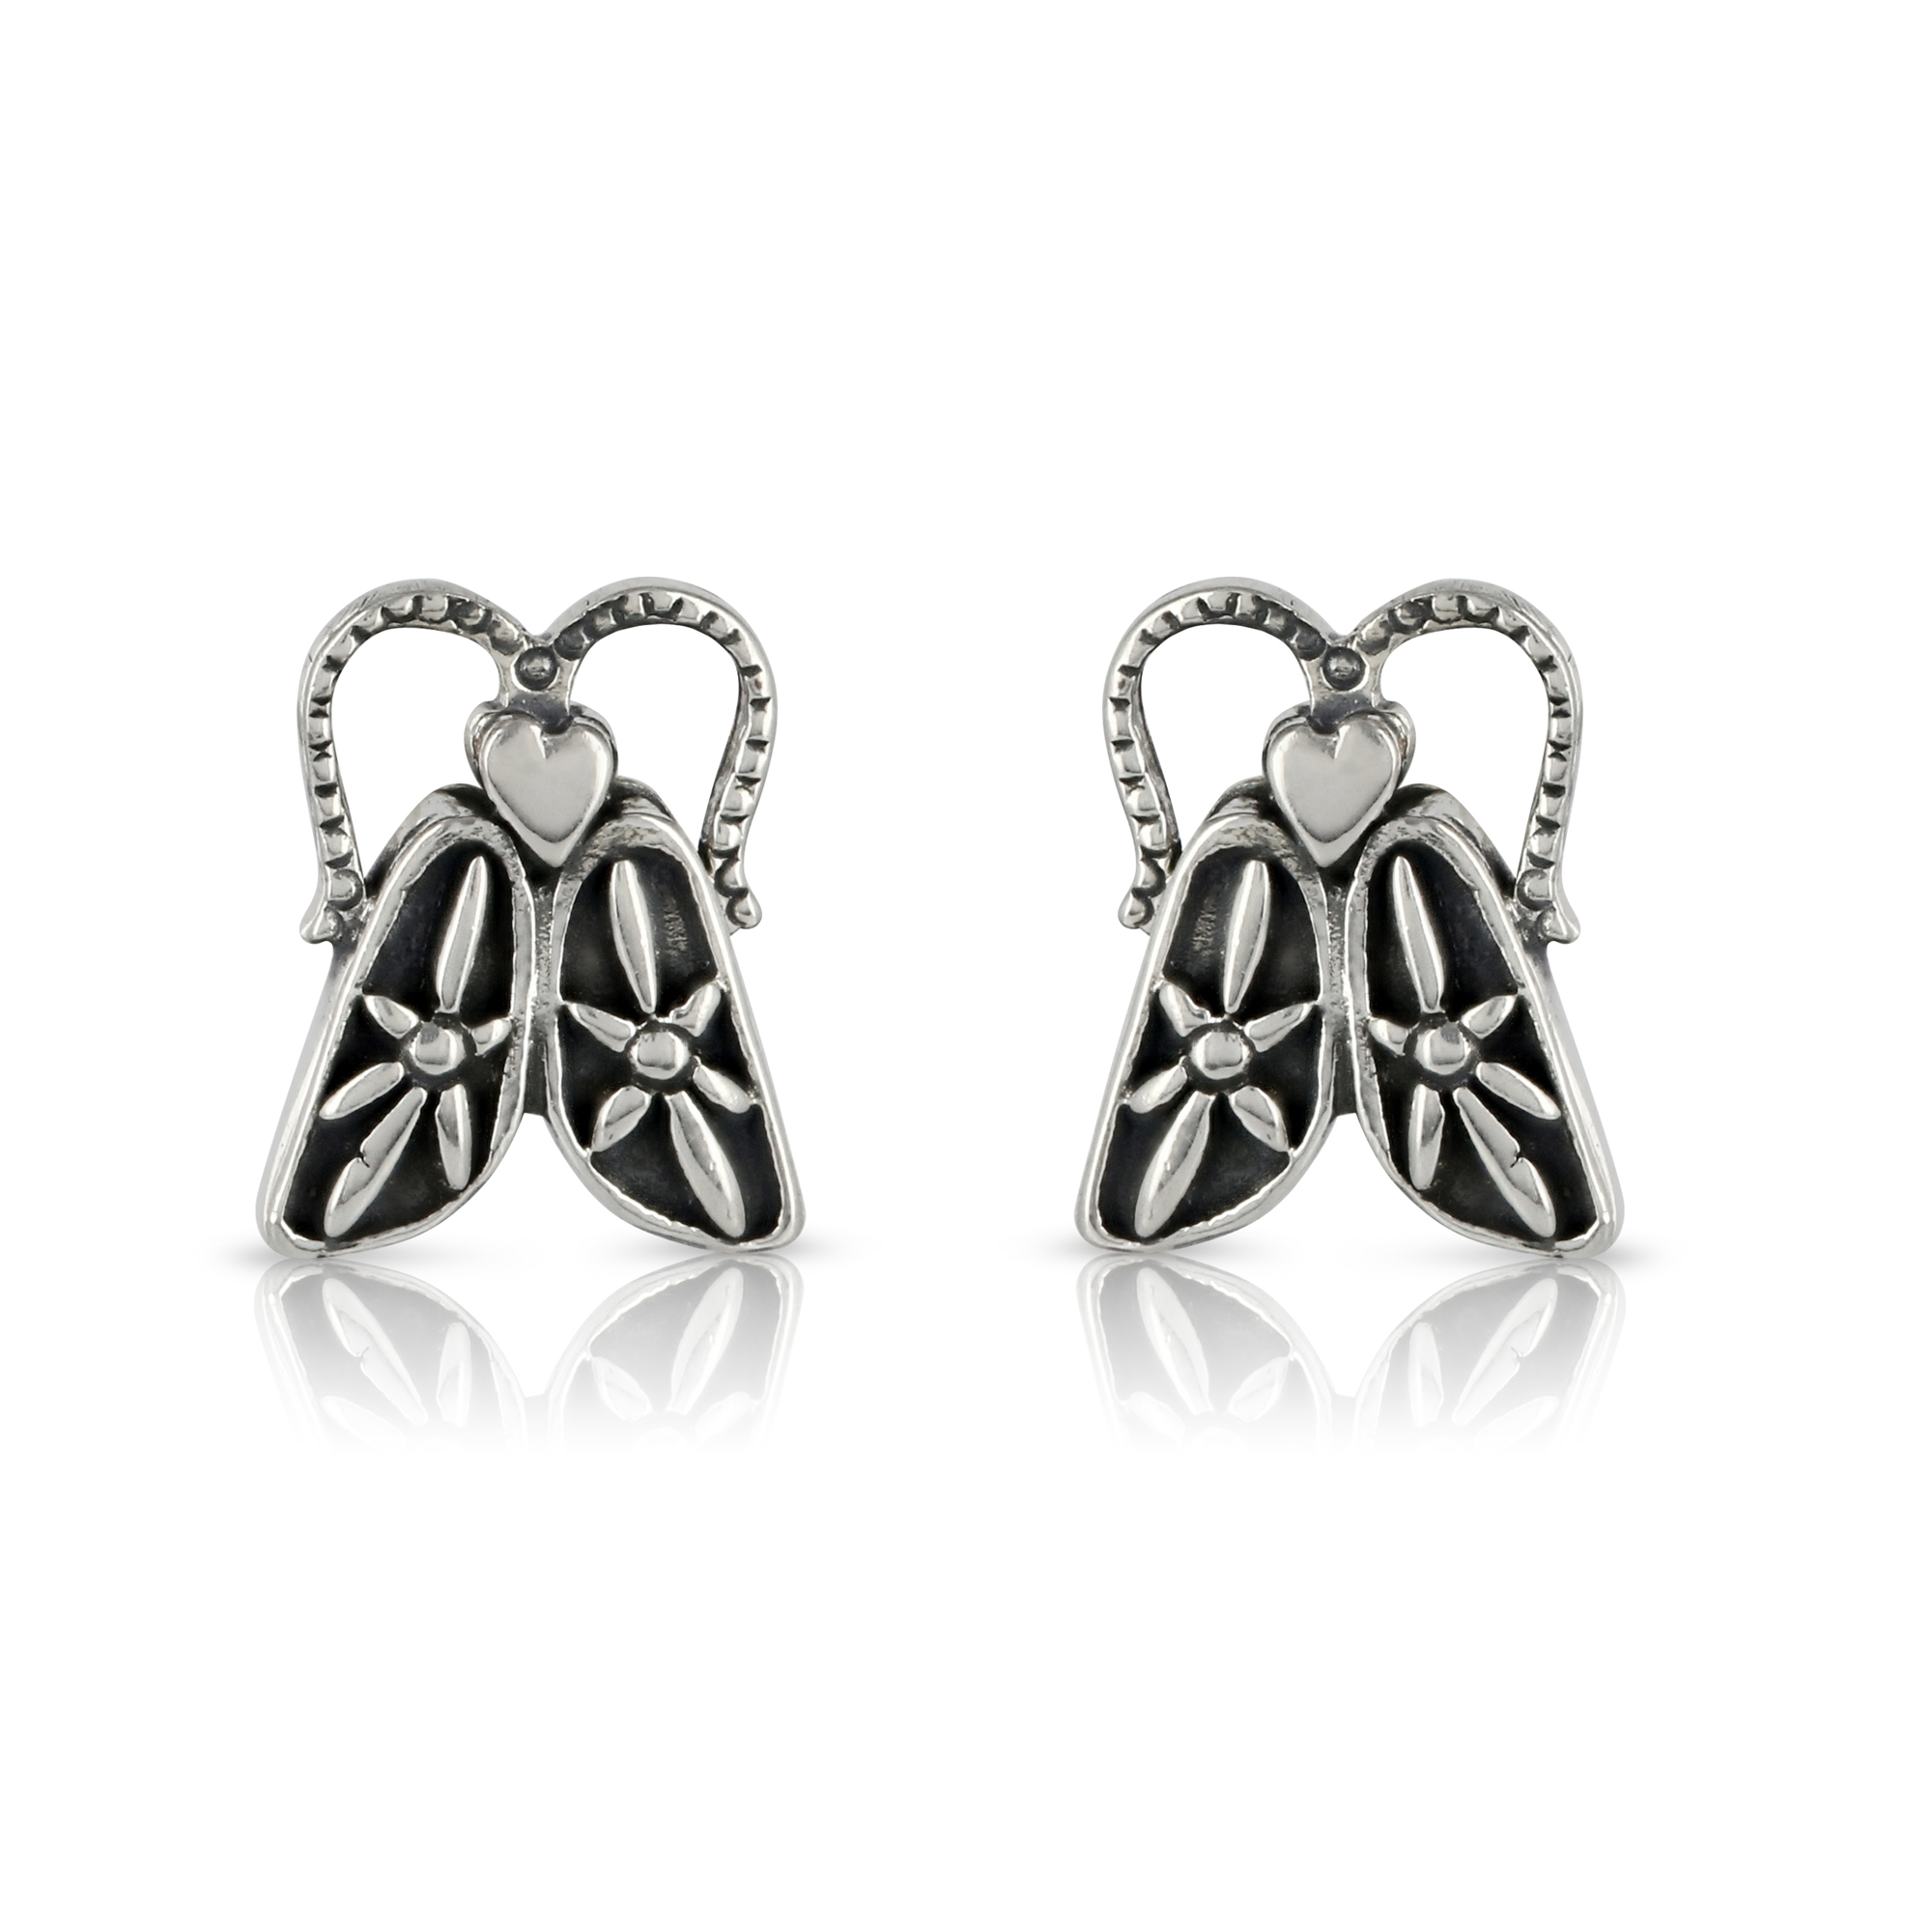 Silver Bug Stud Earrings by Prey Jewellery